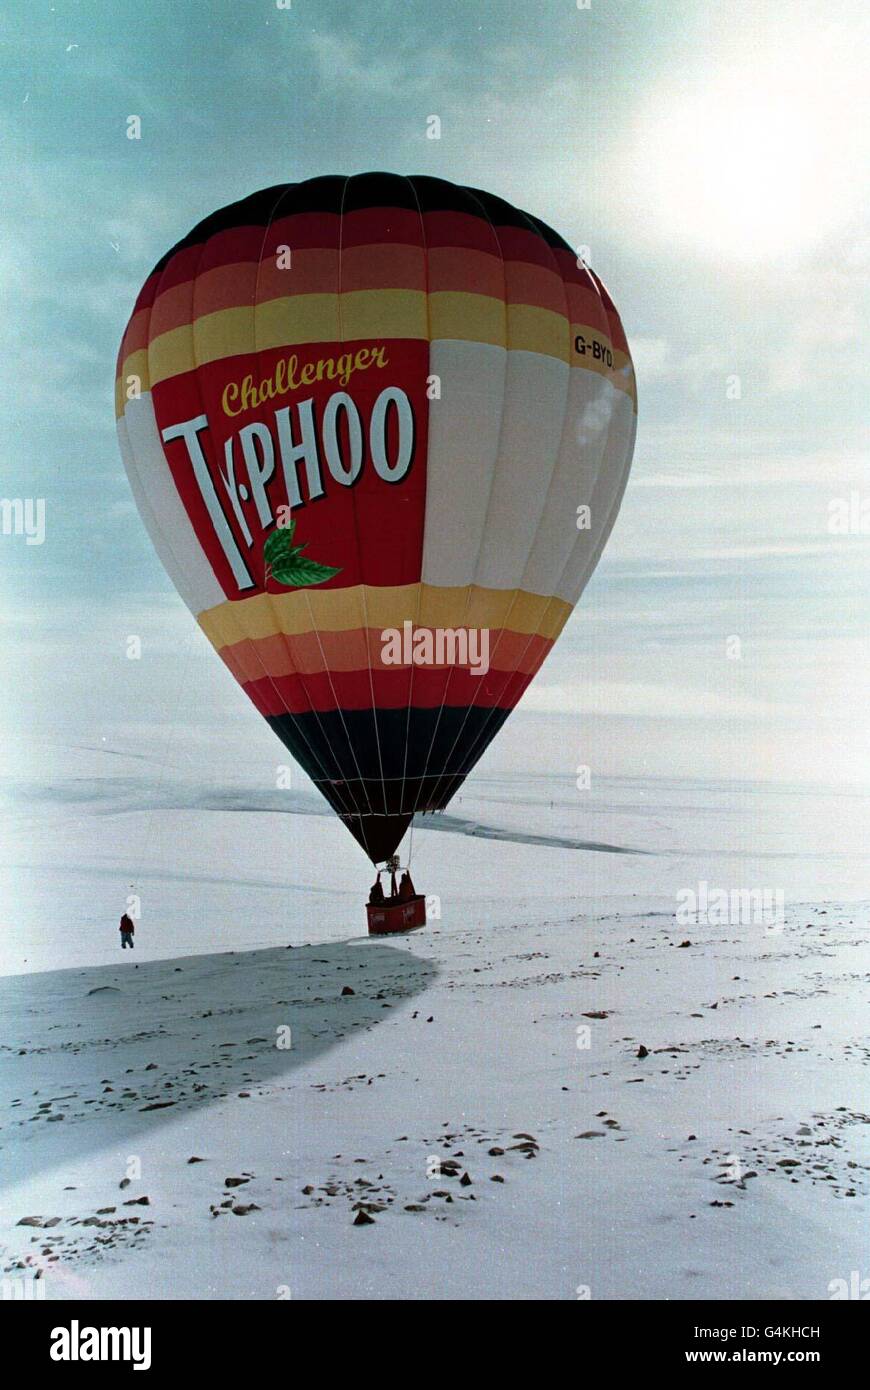 L'equipaggio della mongolfiera britannica Typhoo Challenger tocca a nord-est di Resolute Bay nell'Artico canadese dopo un volo di prova riuscito. I piloti David Hempleman-Adams e Phil Dunnington sperano di essere il primo team britannico a sorvolare il Polo Nord magnetico. Foto Stock